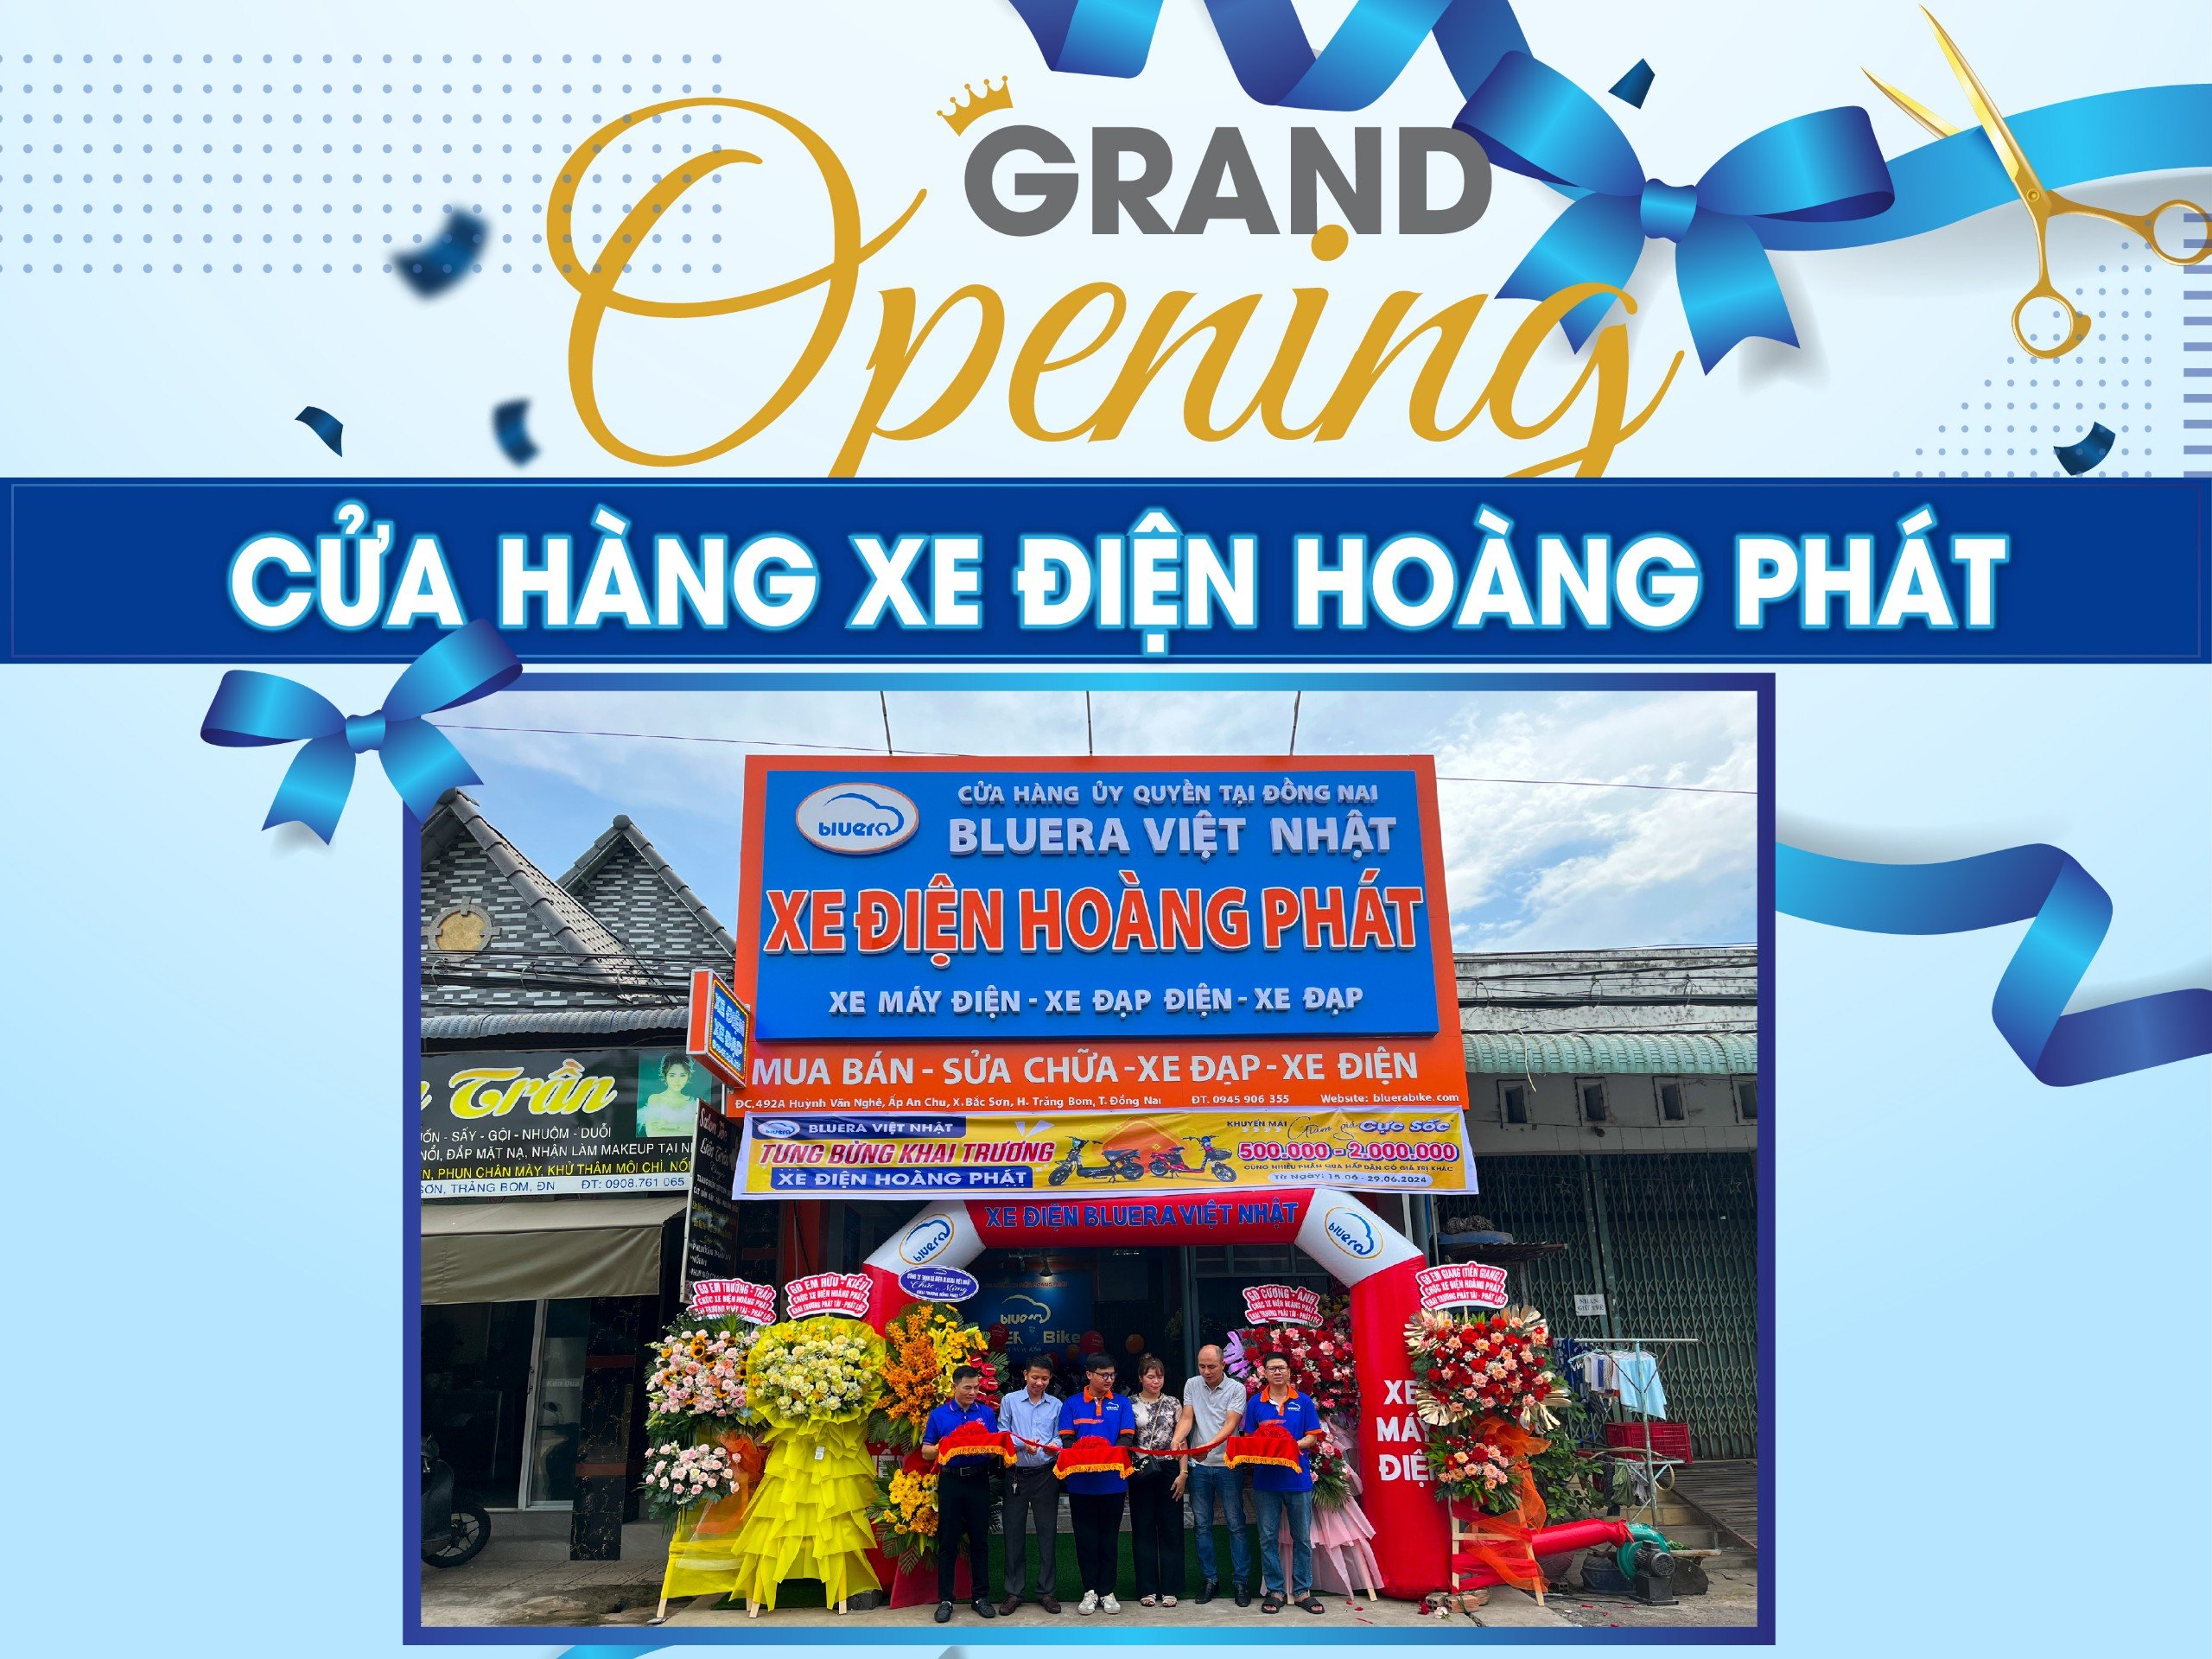 Khai trương cửa hàng xe điện Hoàng Phát - Trảng Bom, Đồng Nai